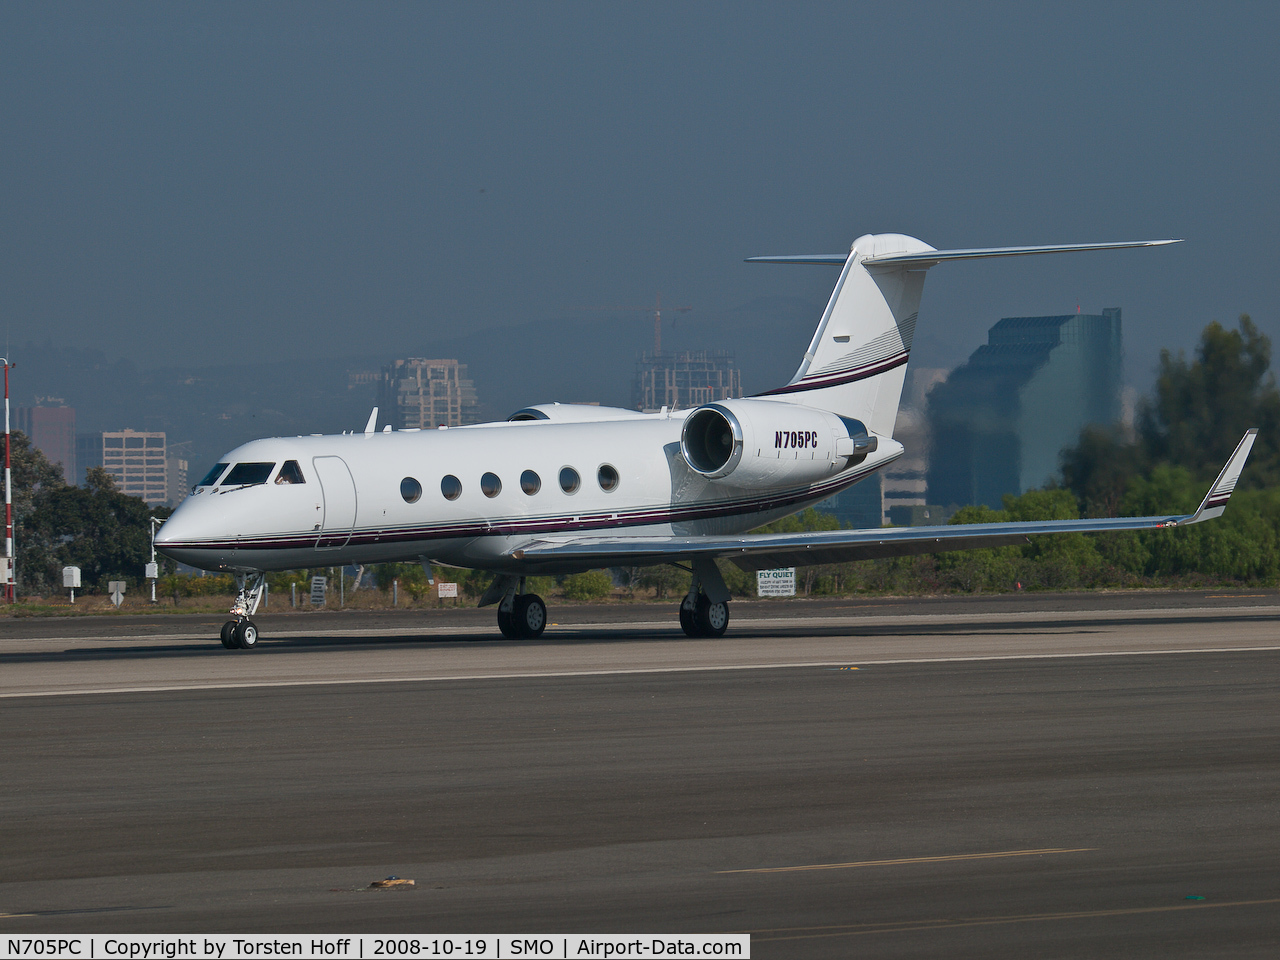 N705PC, 1994 Gulfstream Aerospace G-IV C/N 1240, N705PC departing from RWY 21